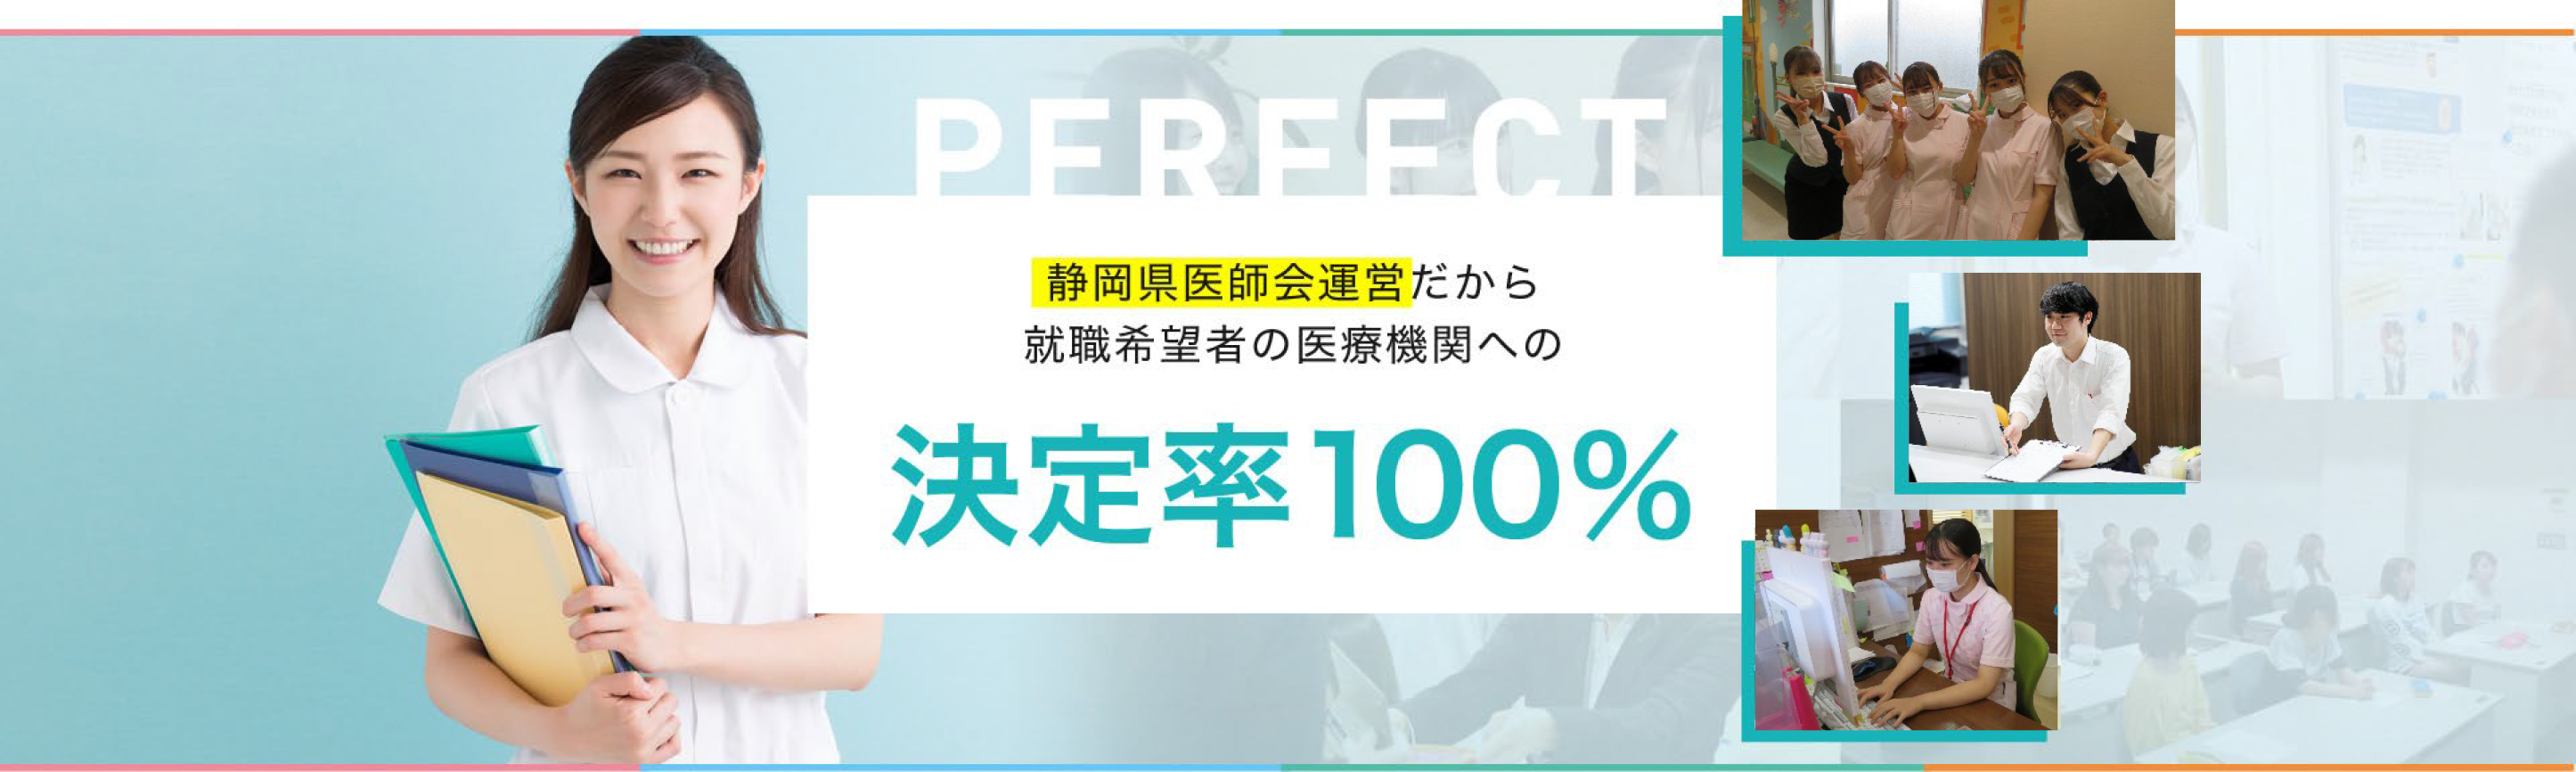 静岡県医師会運営関与だから就職希望者の医療機関への決定率100%